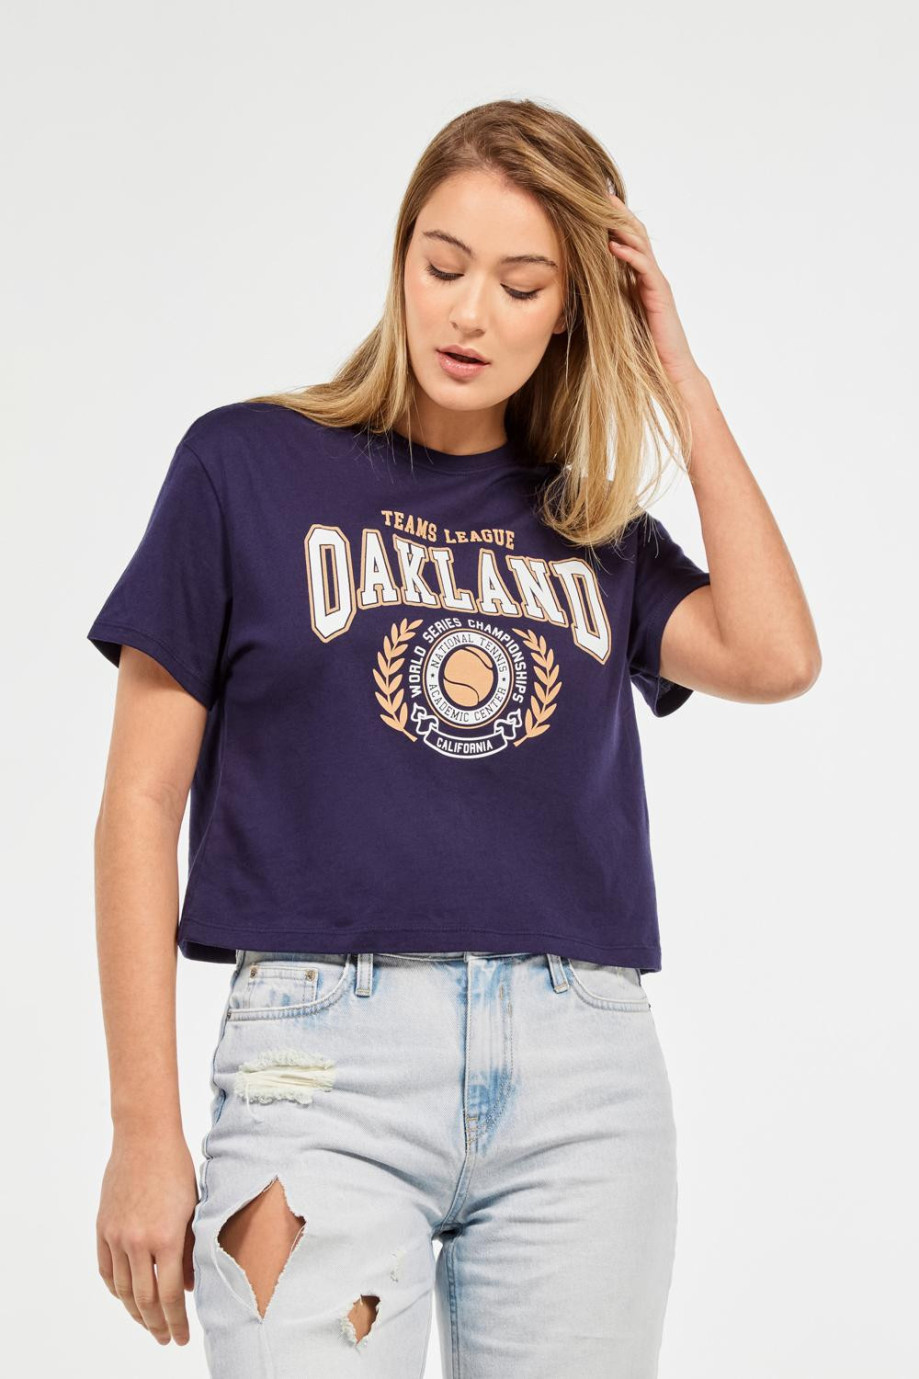 Camiseta azul intensa crop top con estampado college de Oakland